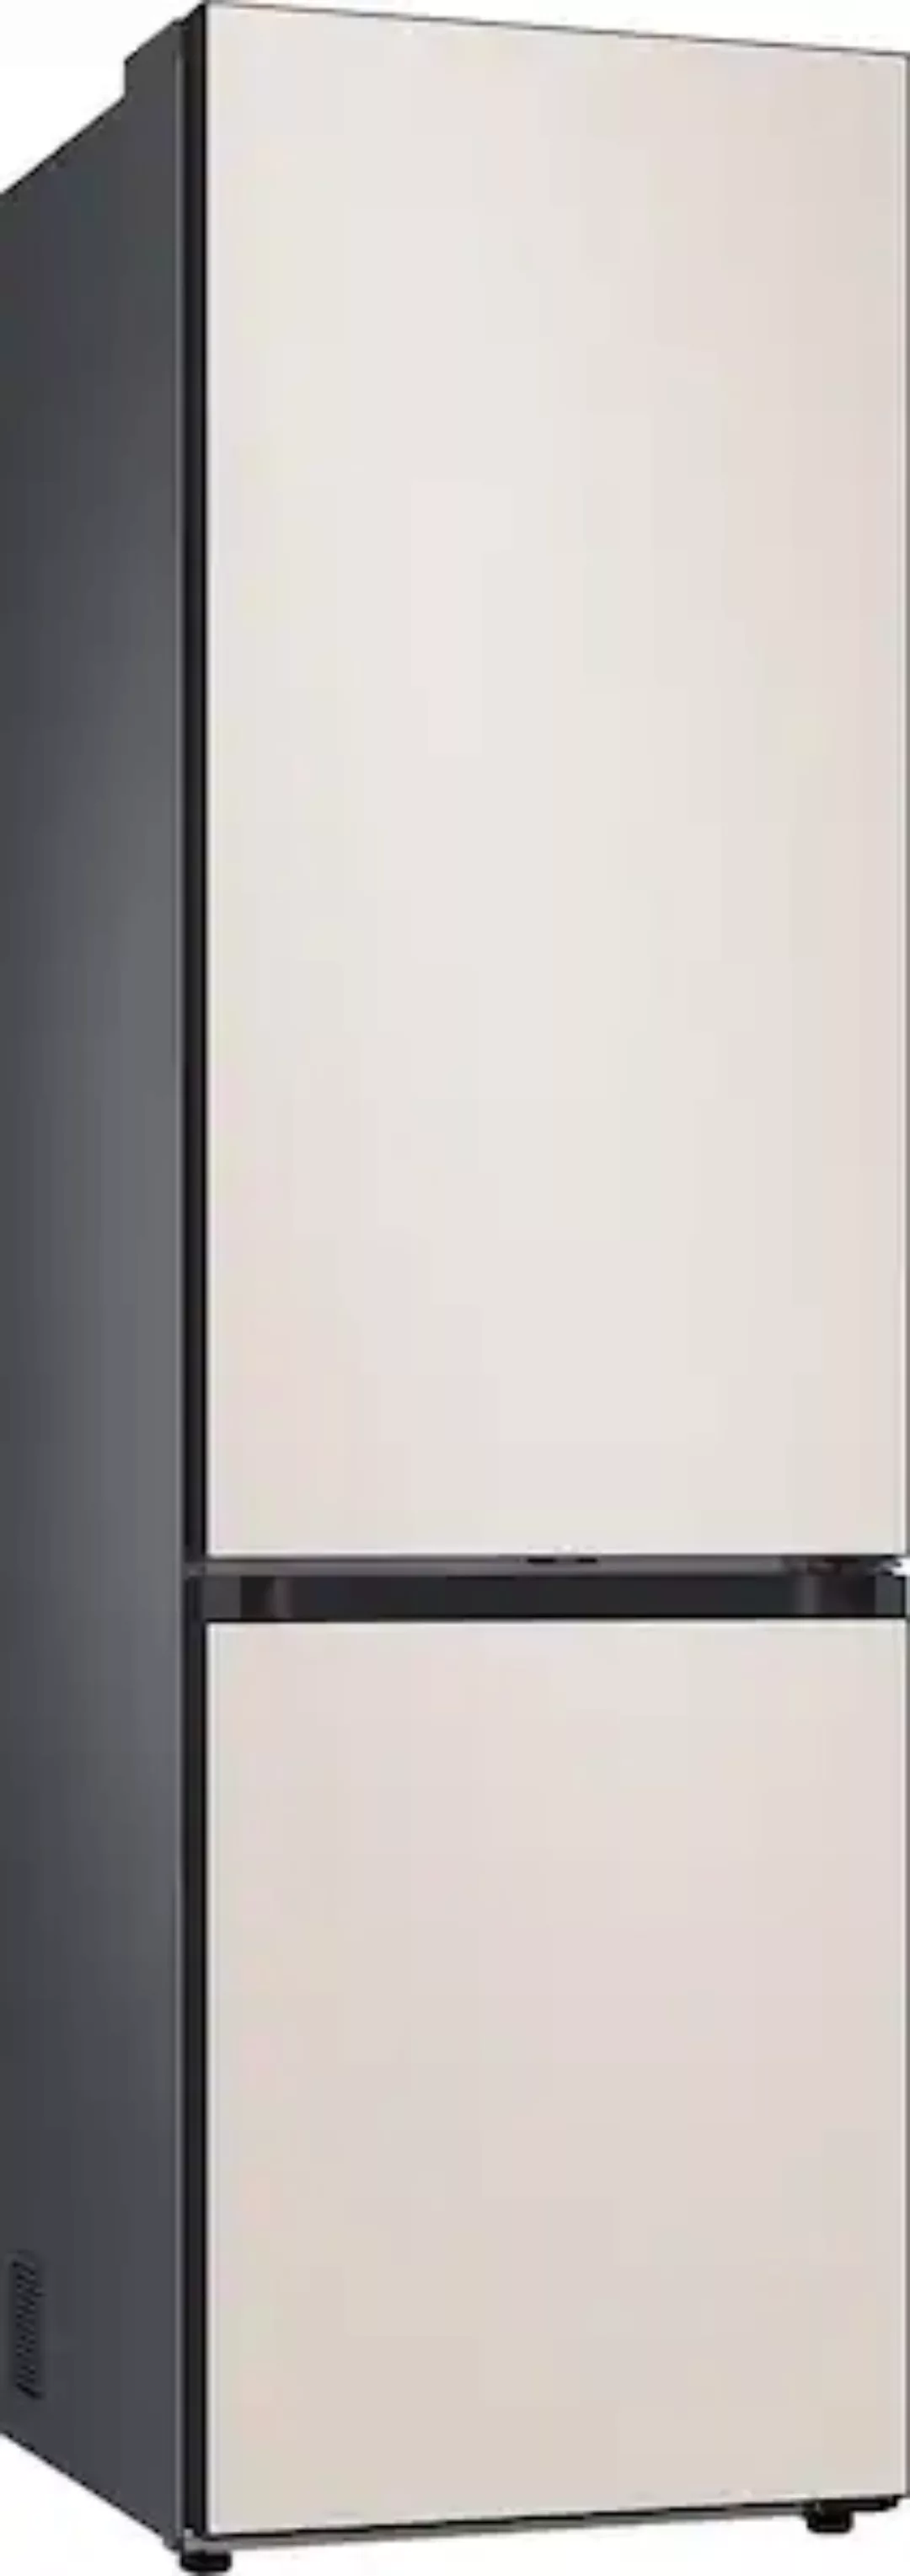 Samsung Kühl-/Gefrierkombination »RL38C6B2CCE«, RL38C6B2CCE, 203 cm hoch, 5 günstig online kaufen